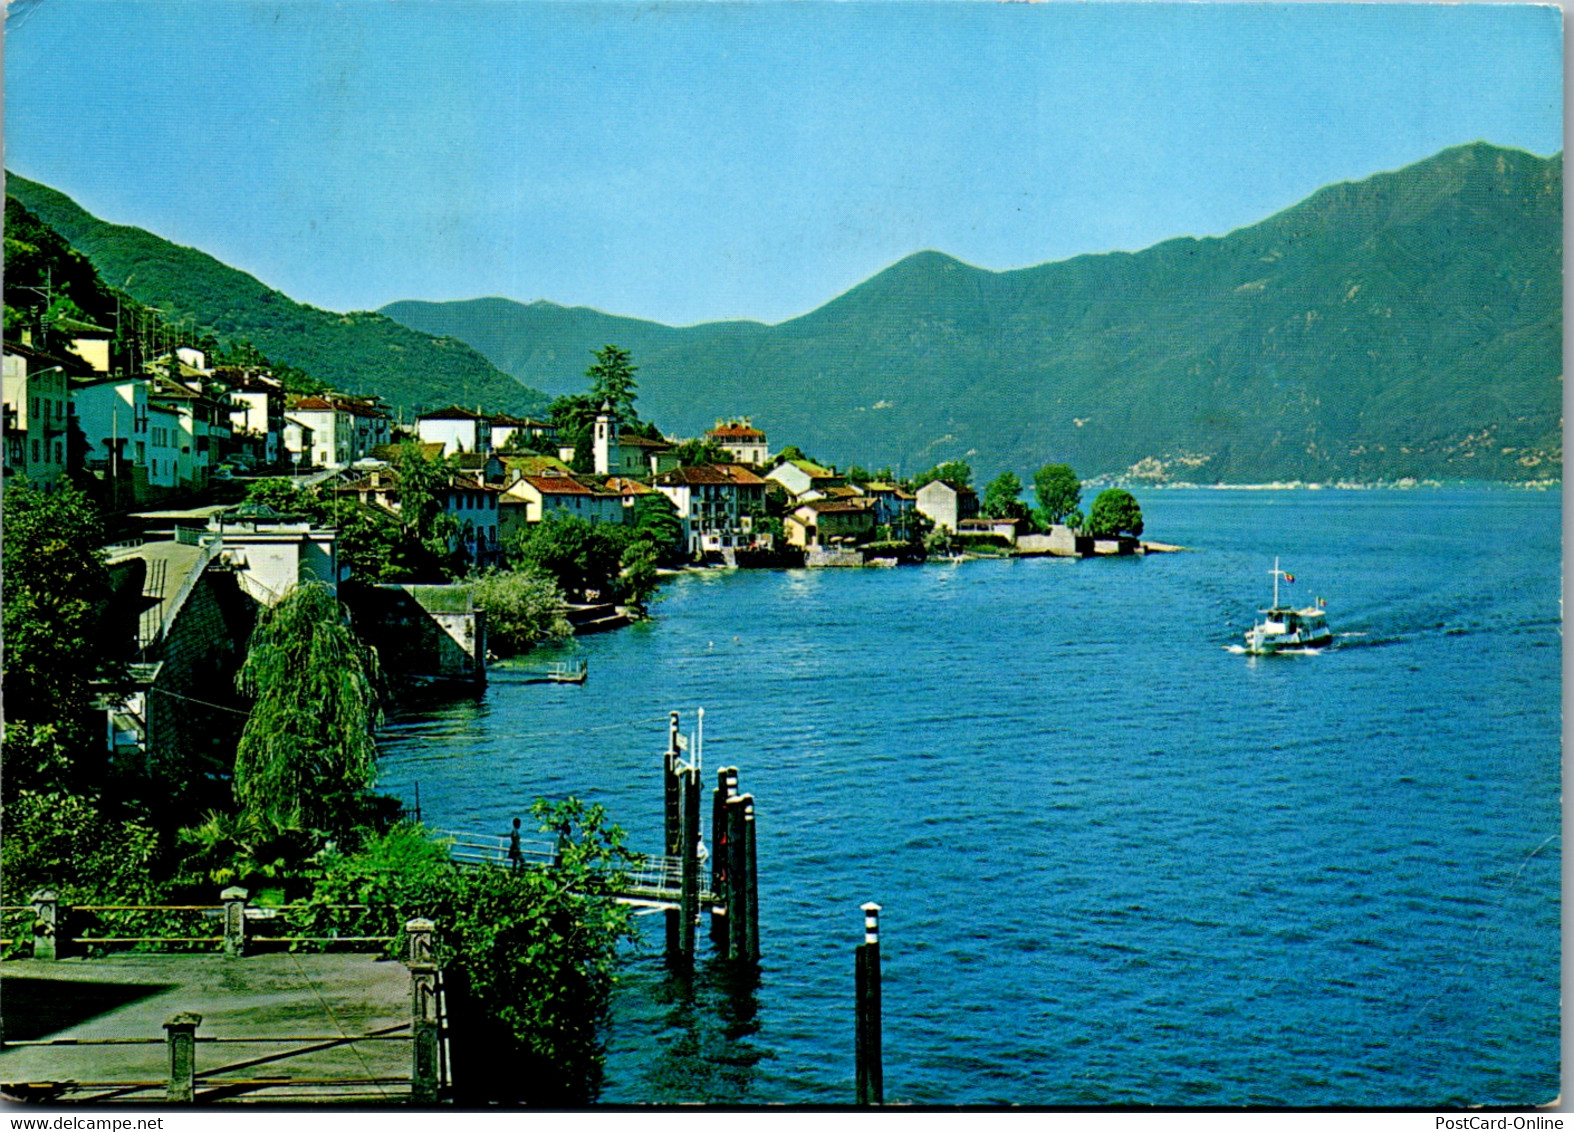 23940 - Schweiz - Gerra Gambarogno , Lago Maggiore - Gelaufen 1971 - Cugnasco-Gerra